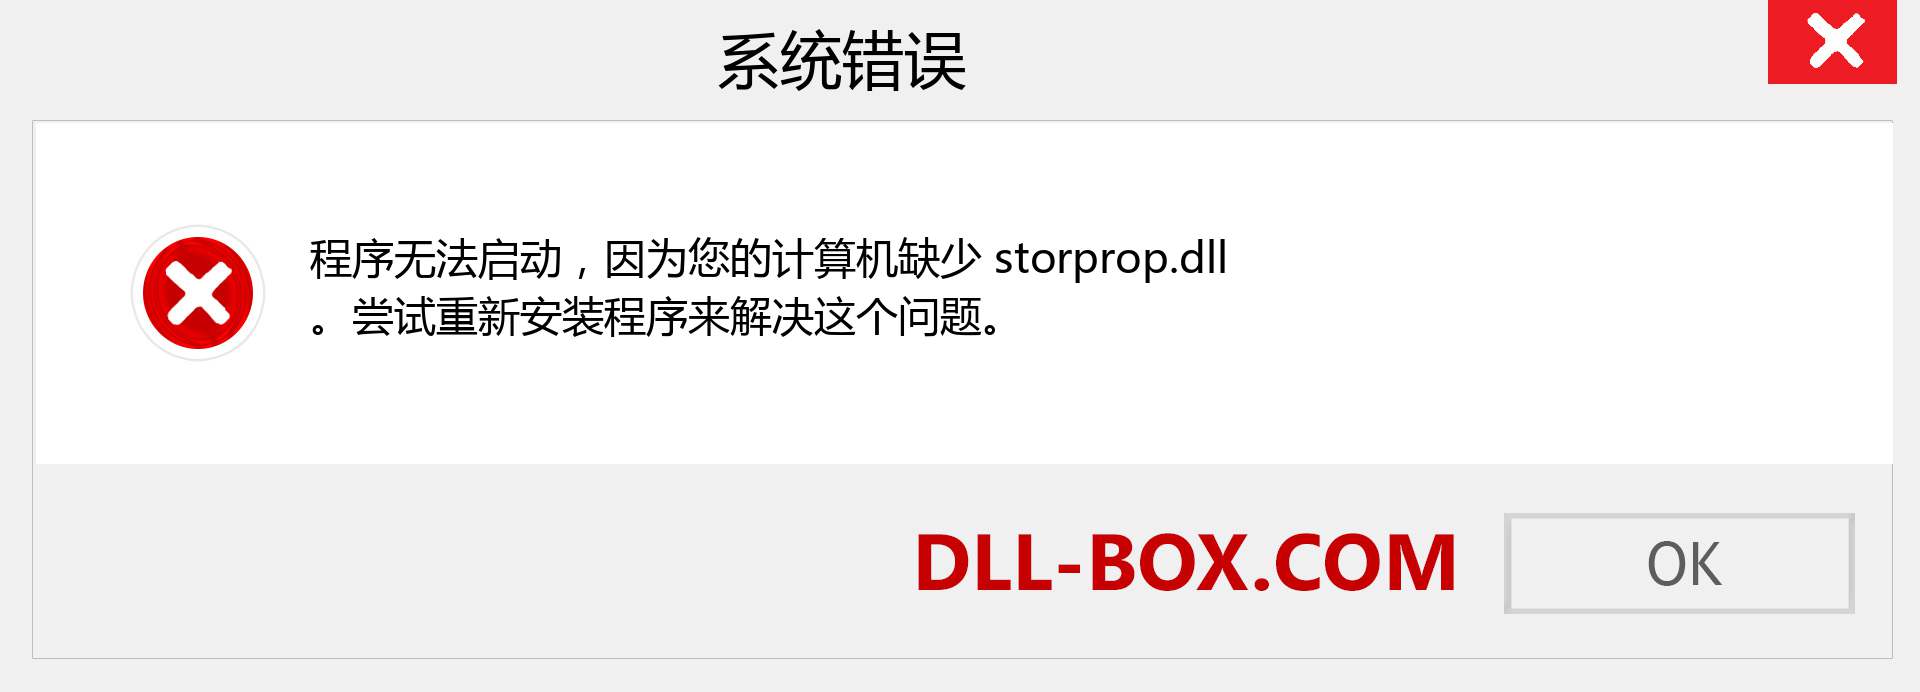 storprop.dll 文件丢失？。 适用于 Windows 7、8、10 的下载 - 修复 Windows、照片、图像上的 storprop dll 丢失错误